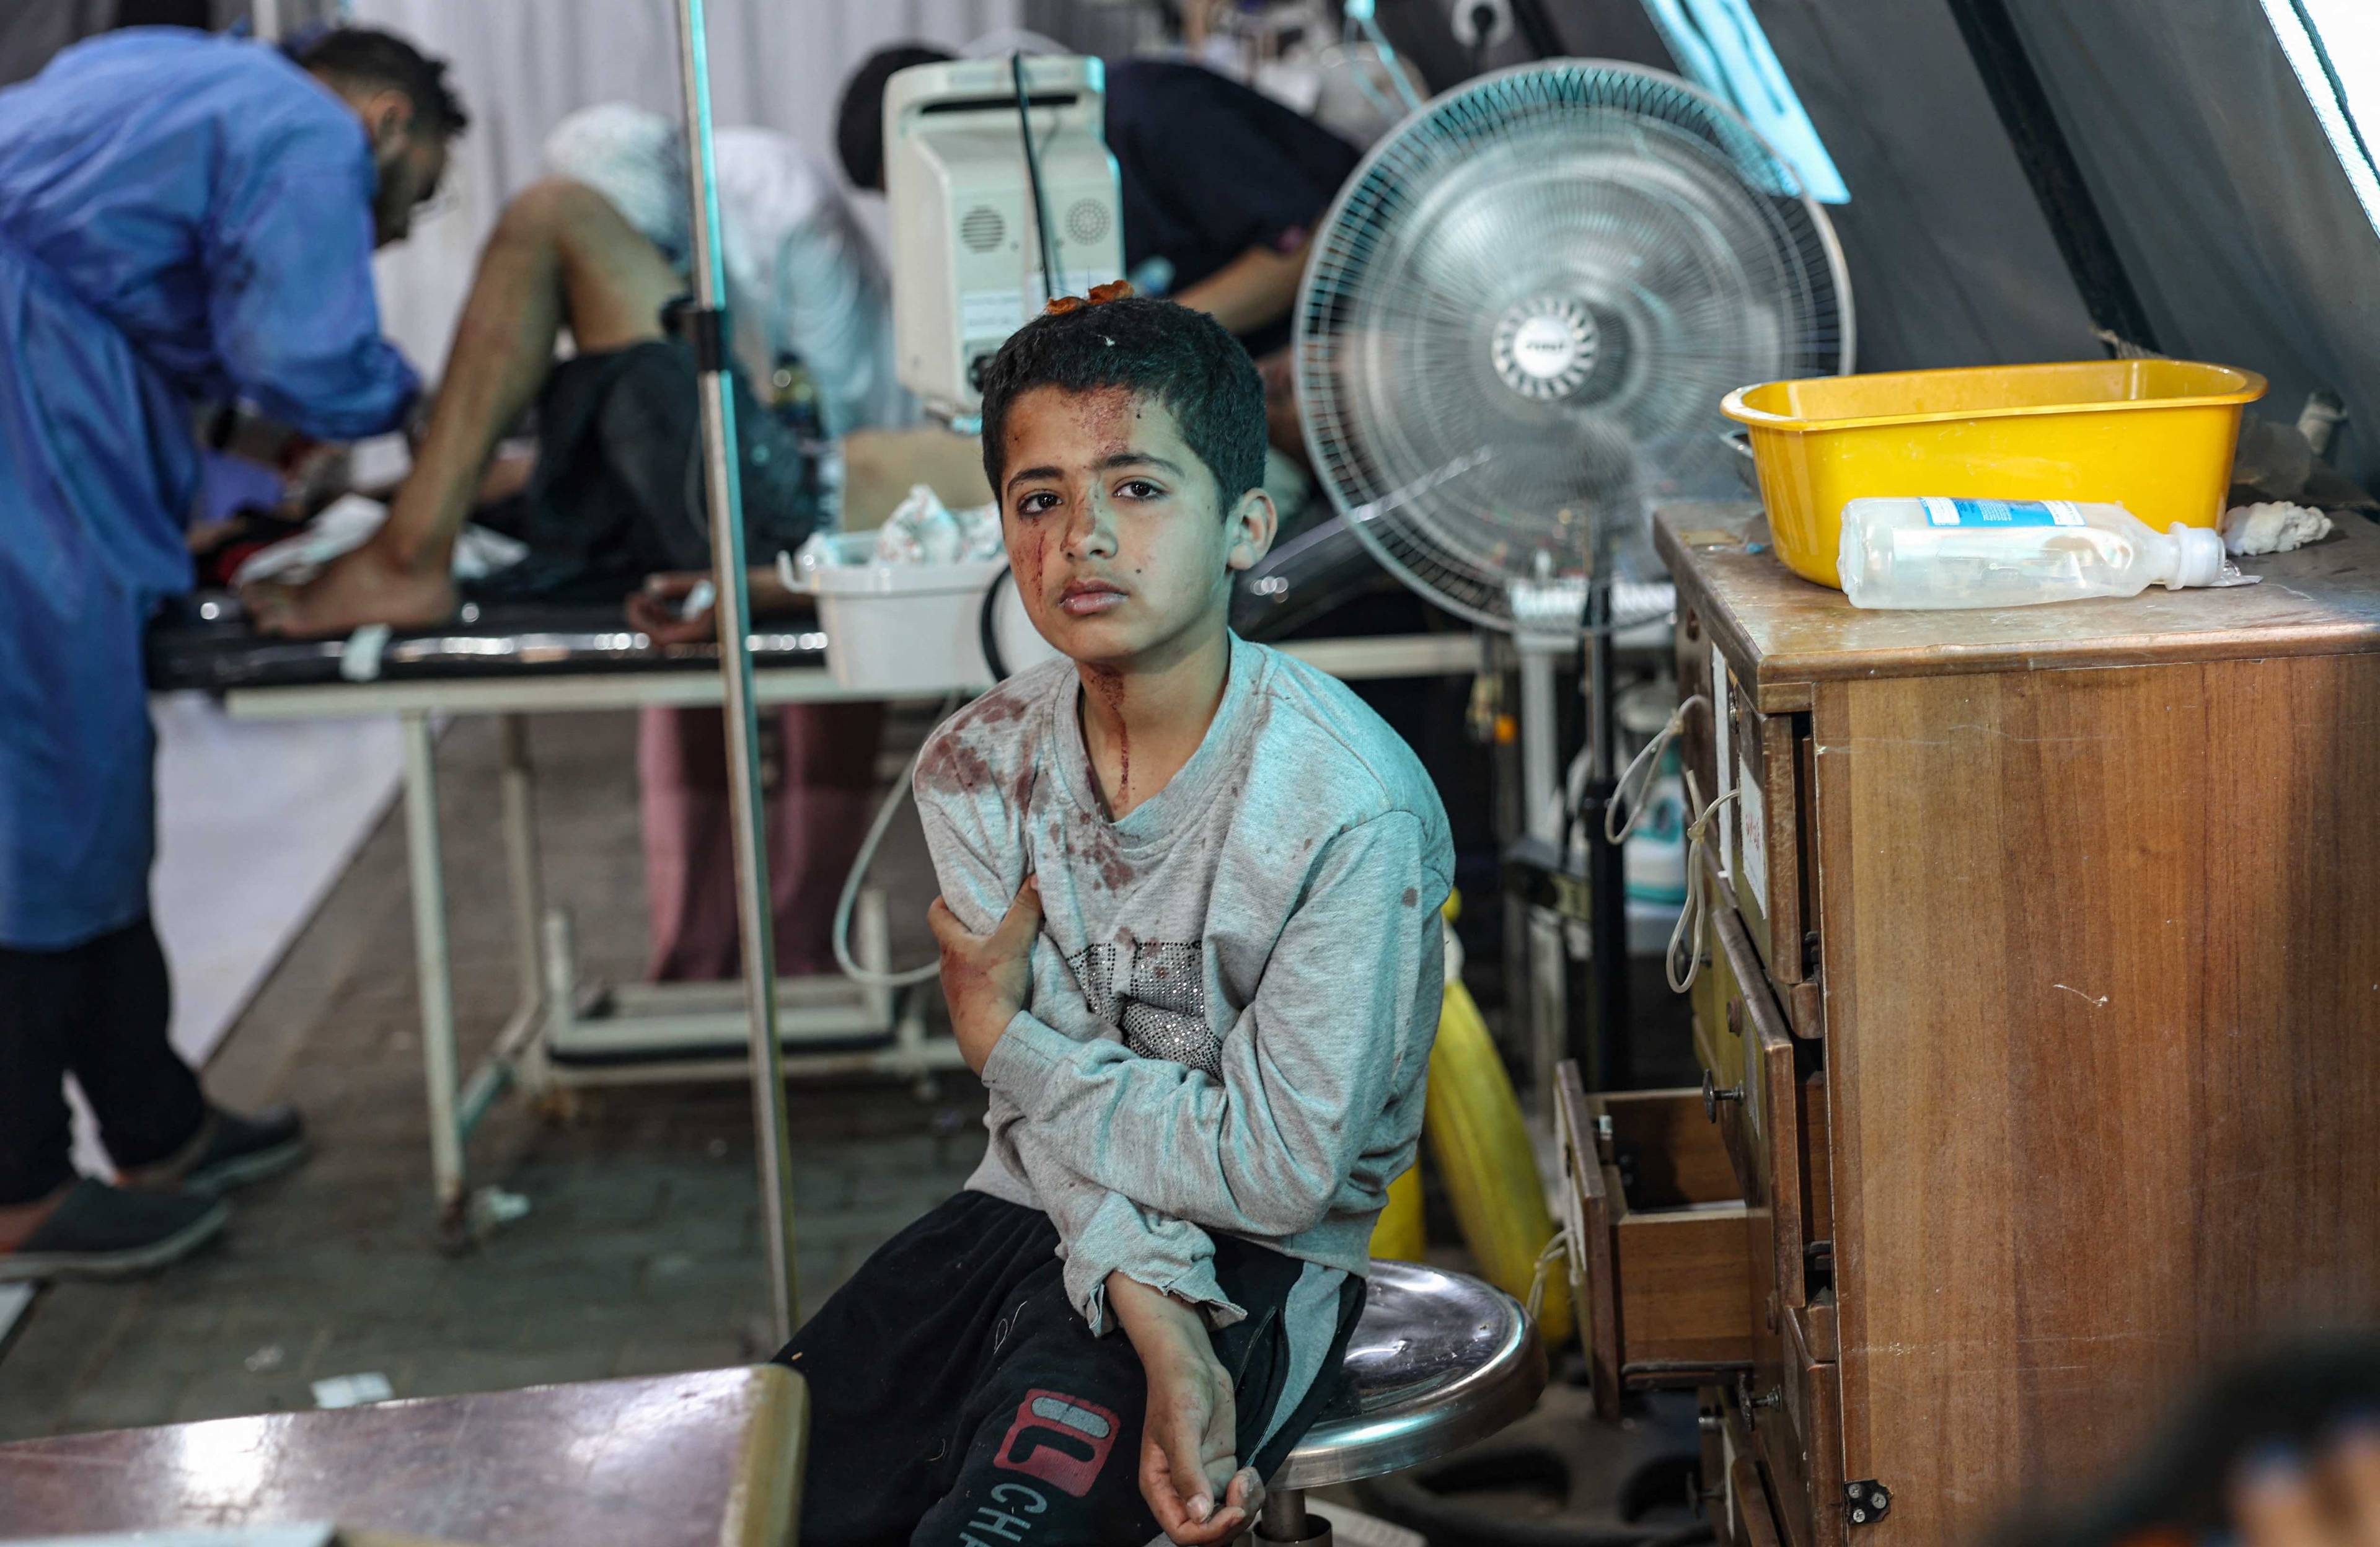 Ranny chłopiec siedzi na stołku i czeka na udzielenie pomocy lekarskiej w szpitalu, w tle widać lekarza zajmującego się pacjentem.Gaza, Rafah.